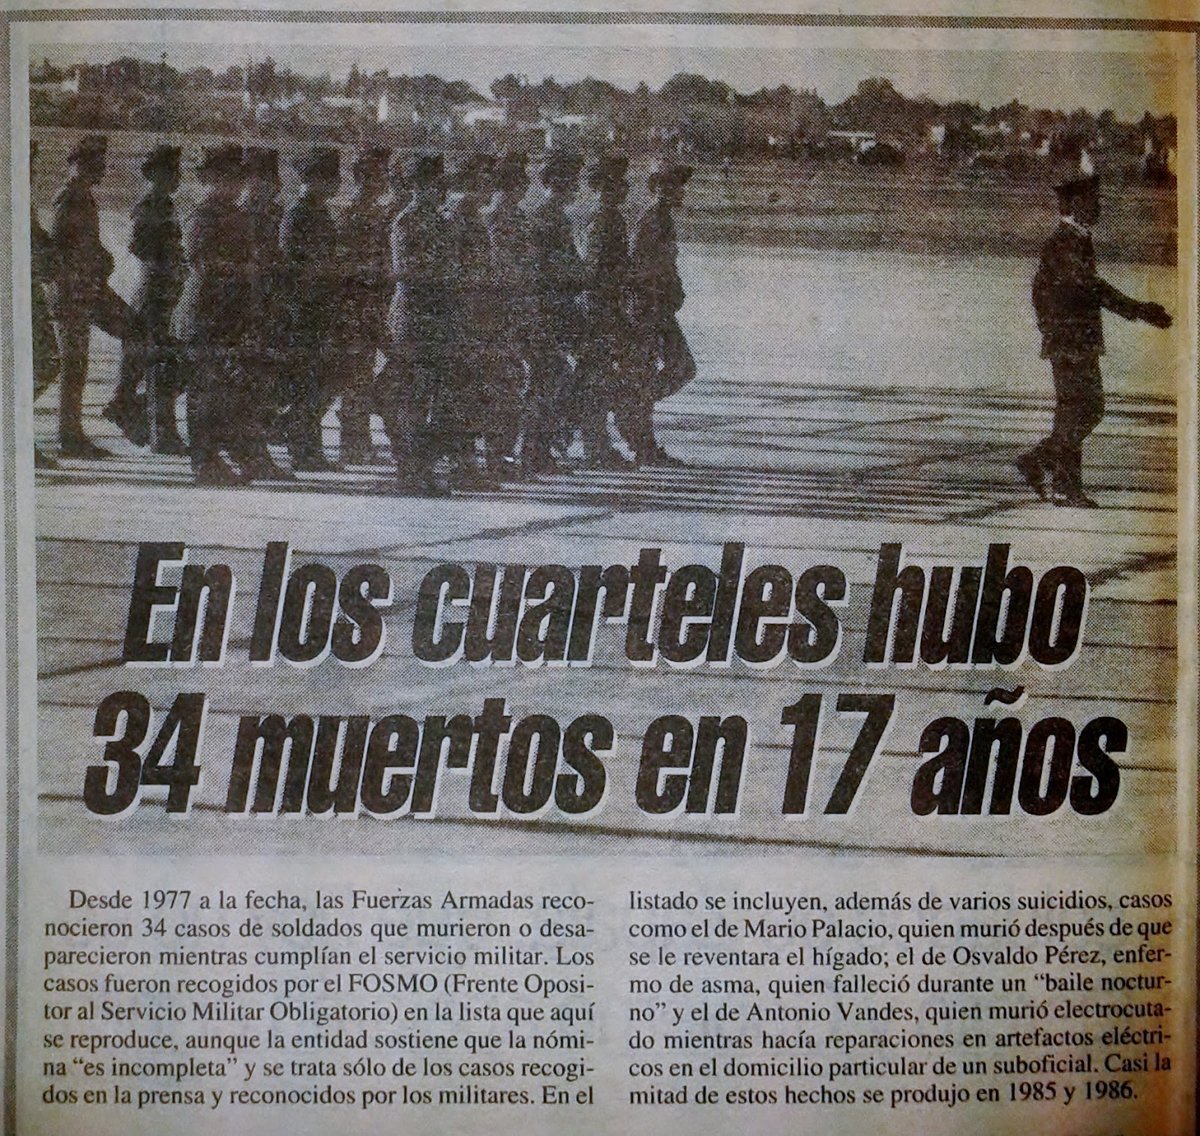 El caso Carrasco: el asesinato que derivó en el fin del Servicio Militar Obligatorio en Argentina